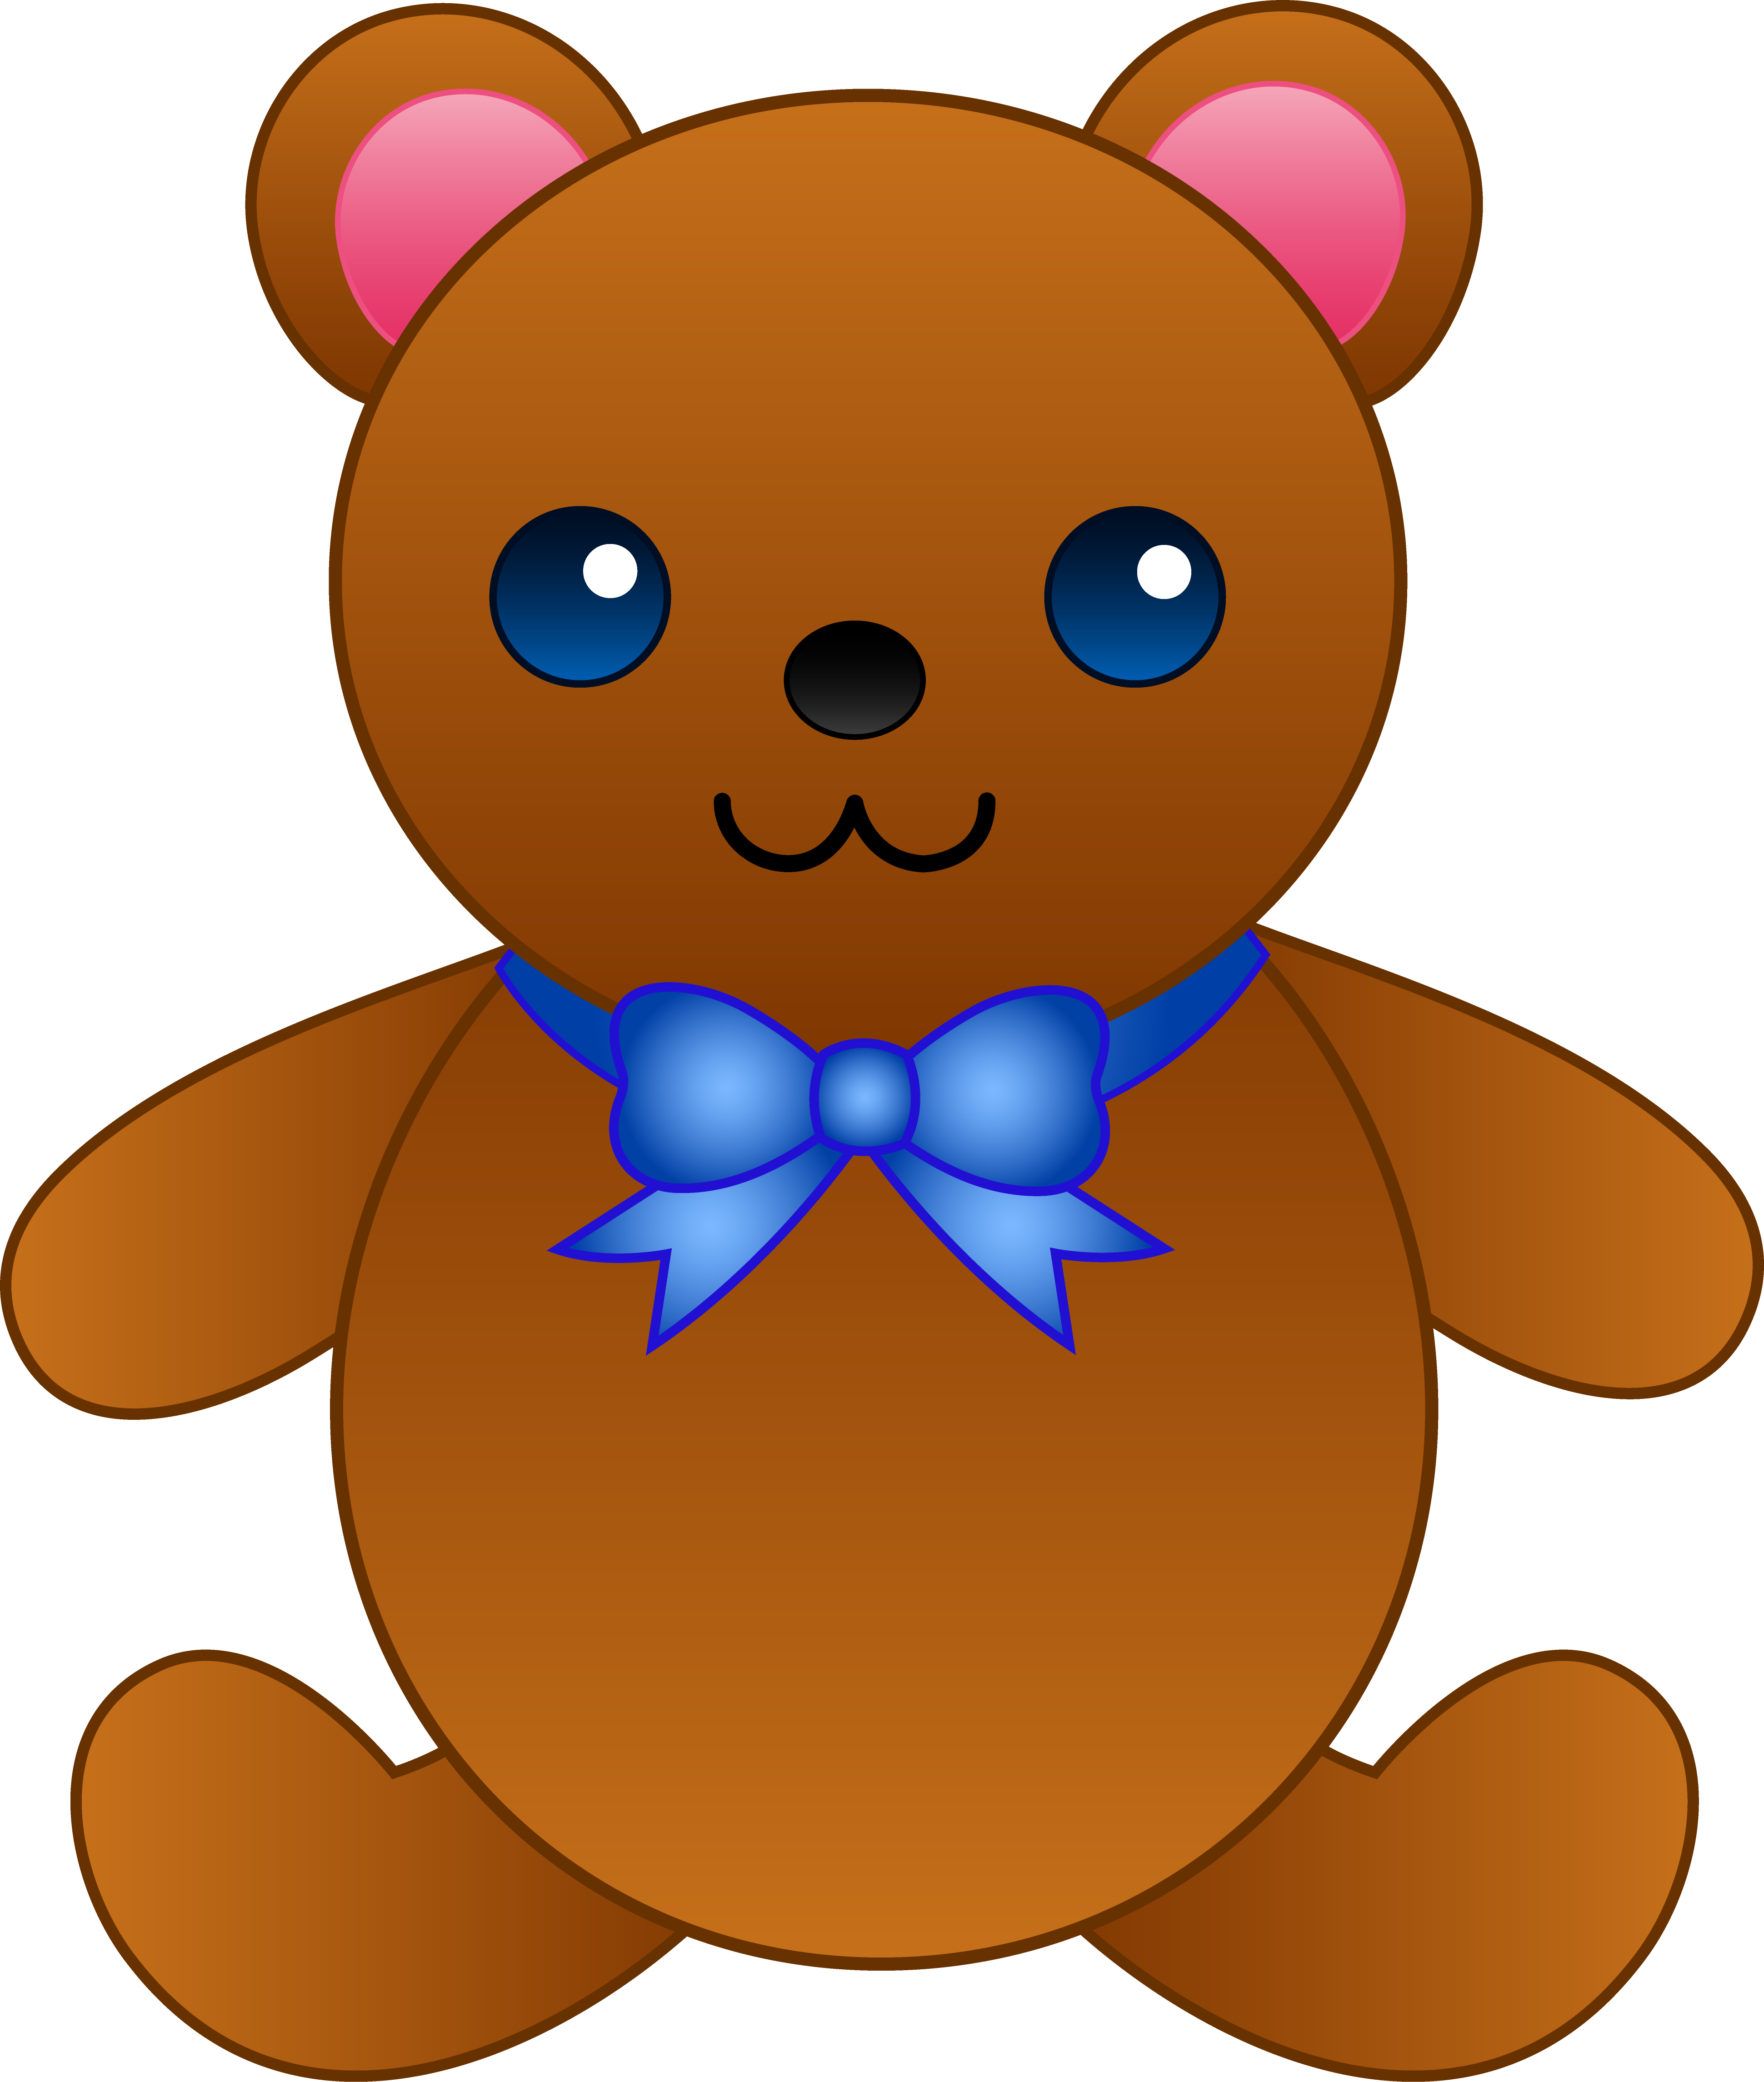 Teddy bear clipart clipartion